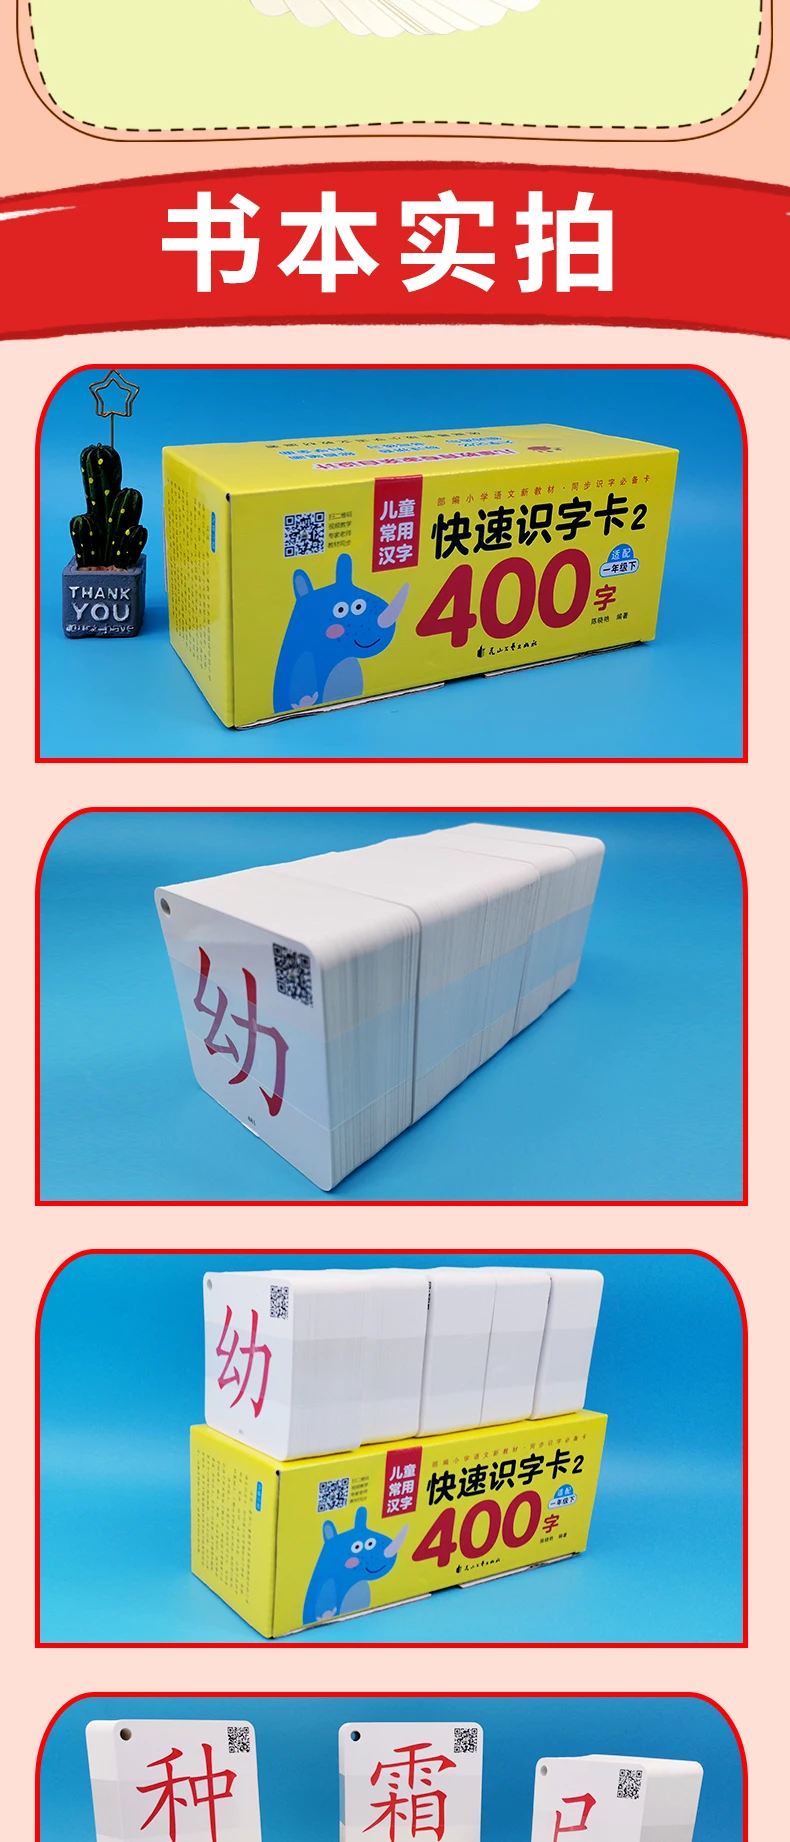 400 флэш-карты с китайскими персонажами (без изображений) для начальной школы, для учеников первого класса, 8x8 см/x дюйма